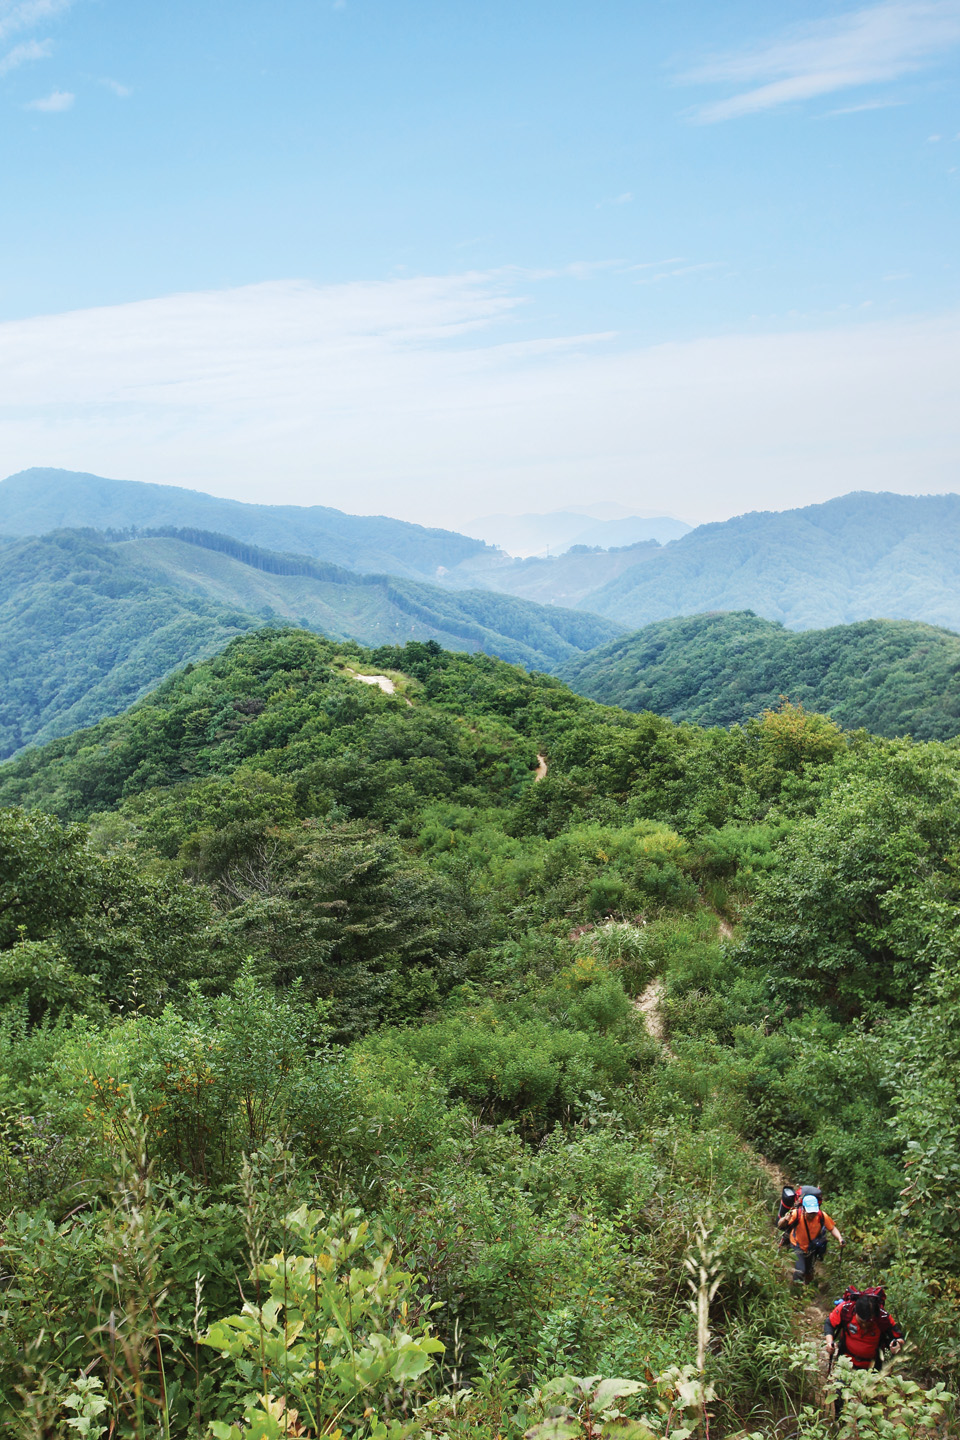  한북정맥은 북한에서 남쪽을 넘어와 서해안까지 이르는 정맥이다. 
